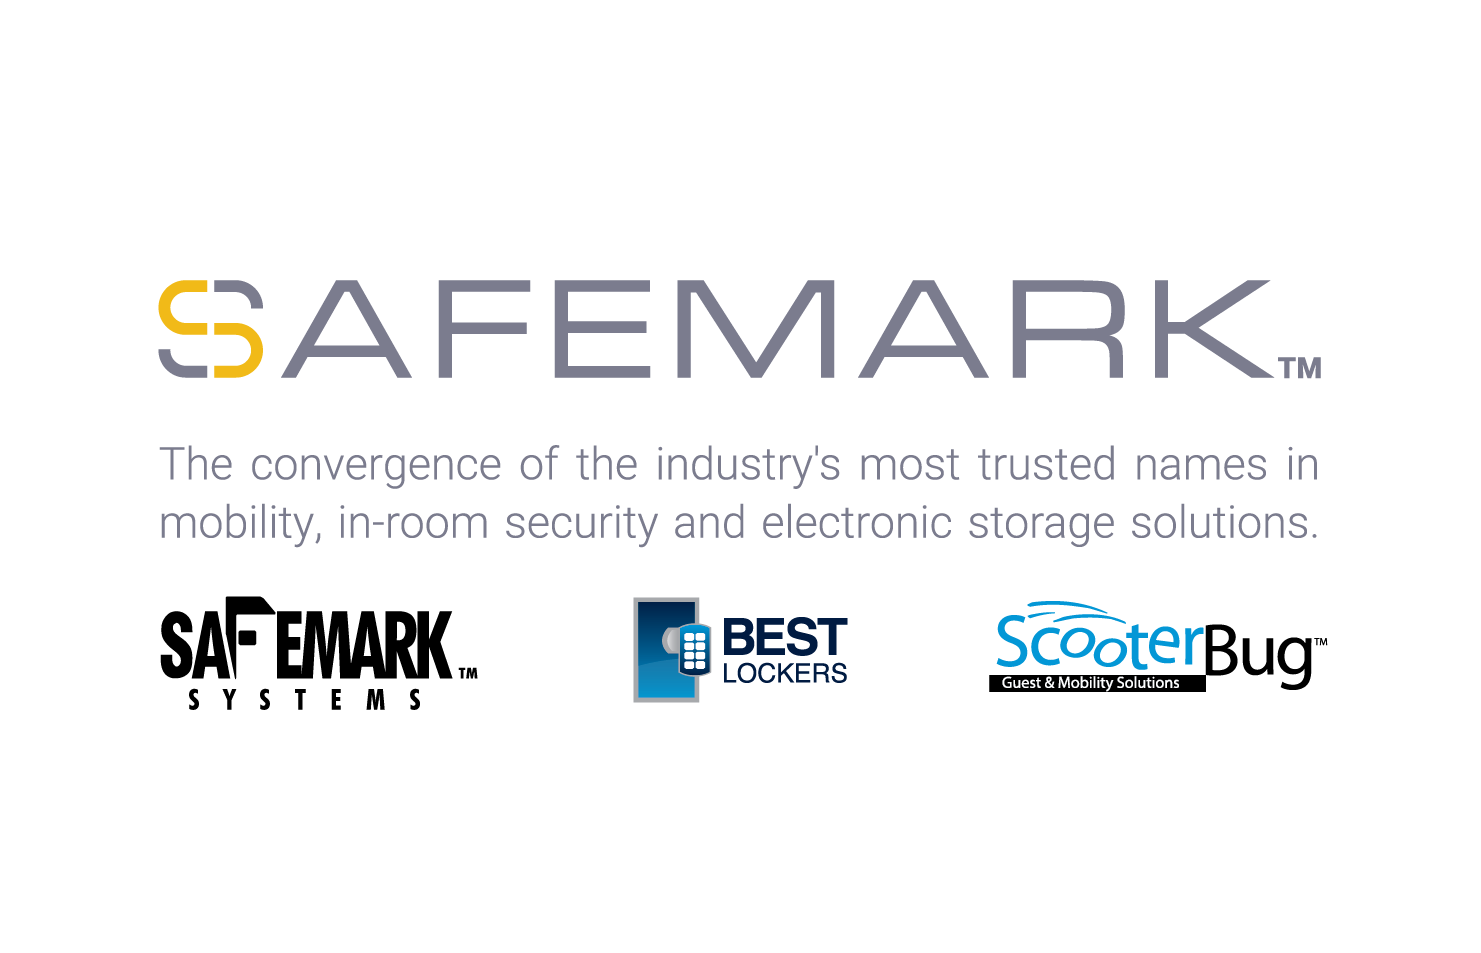 Safemark Systems